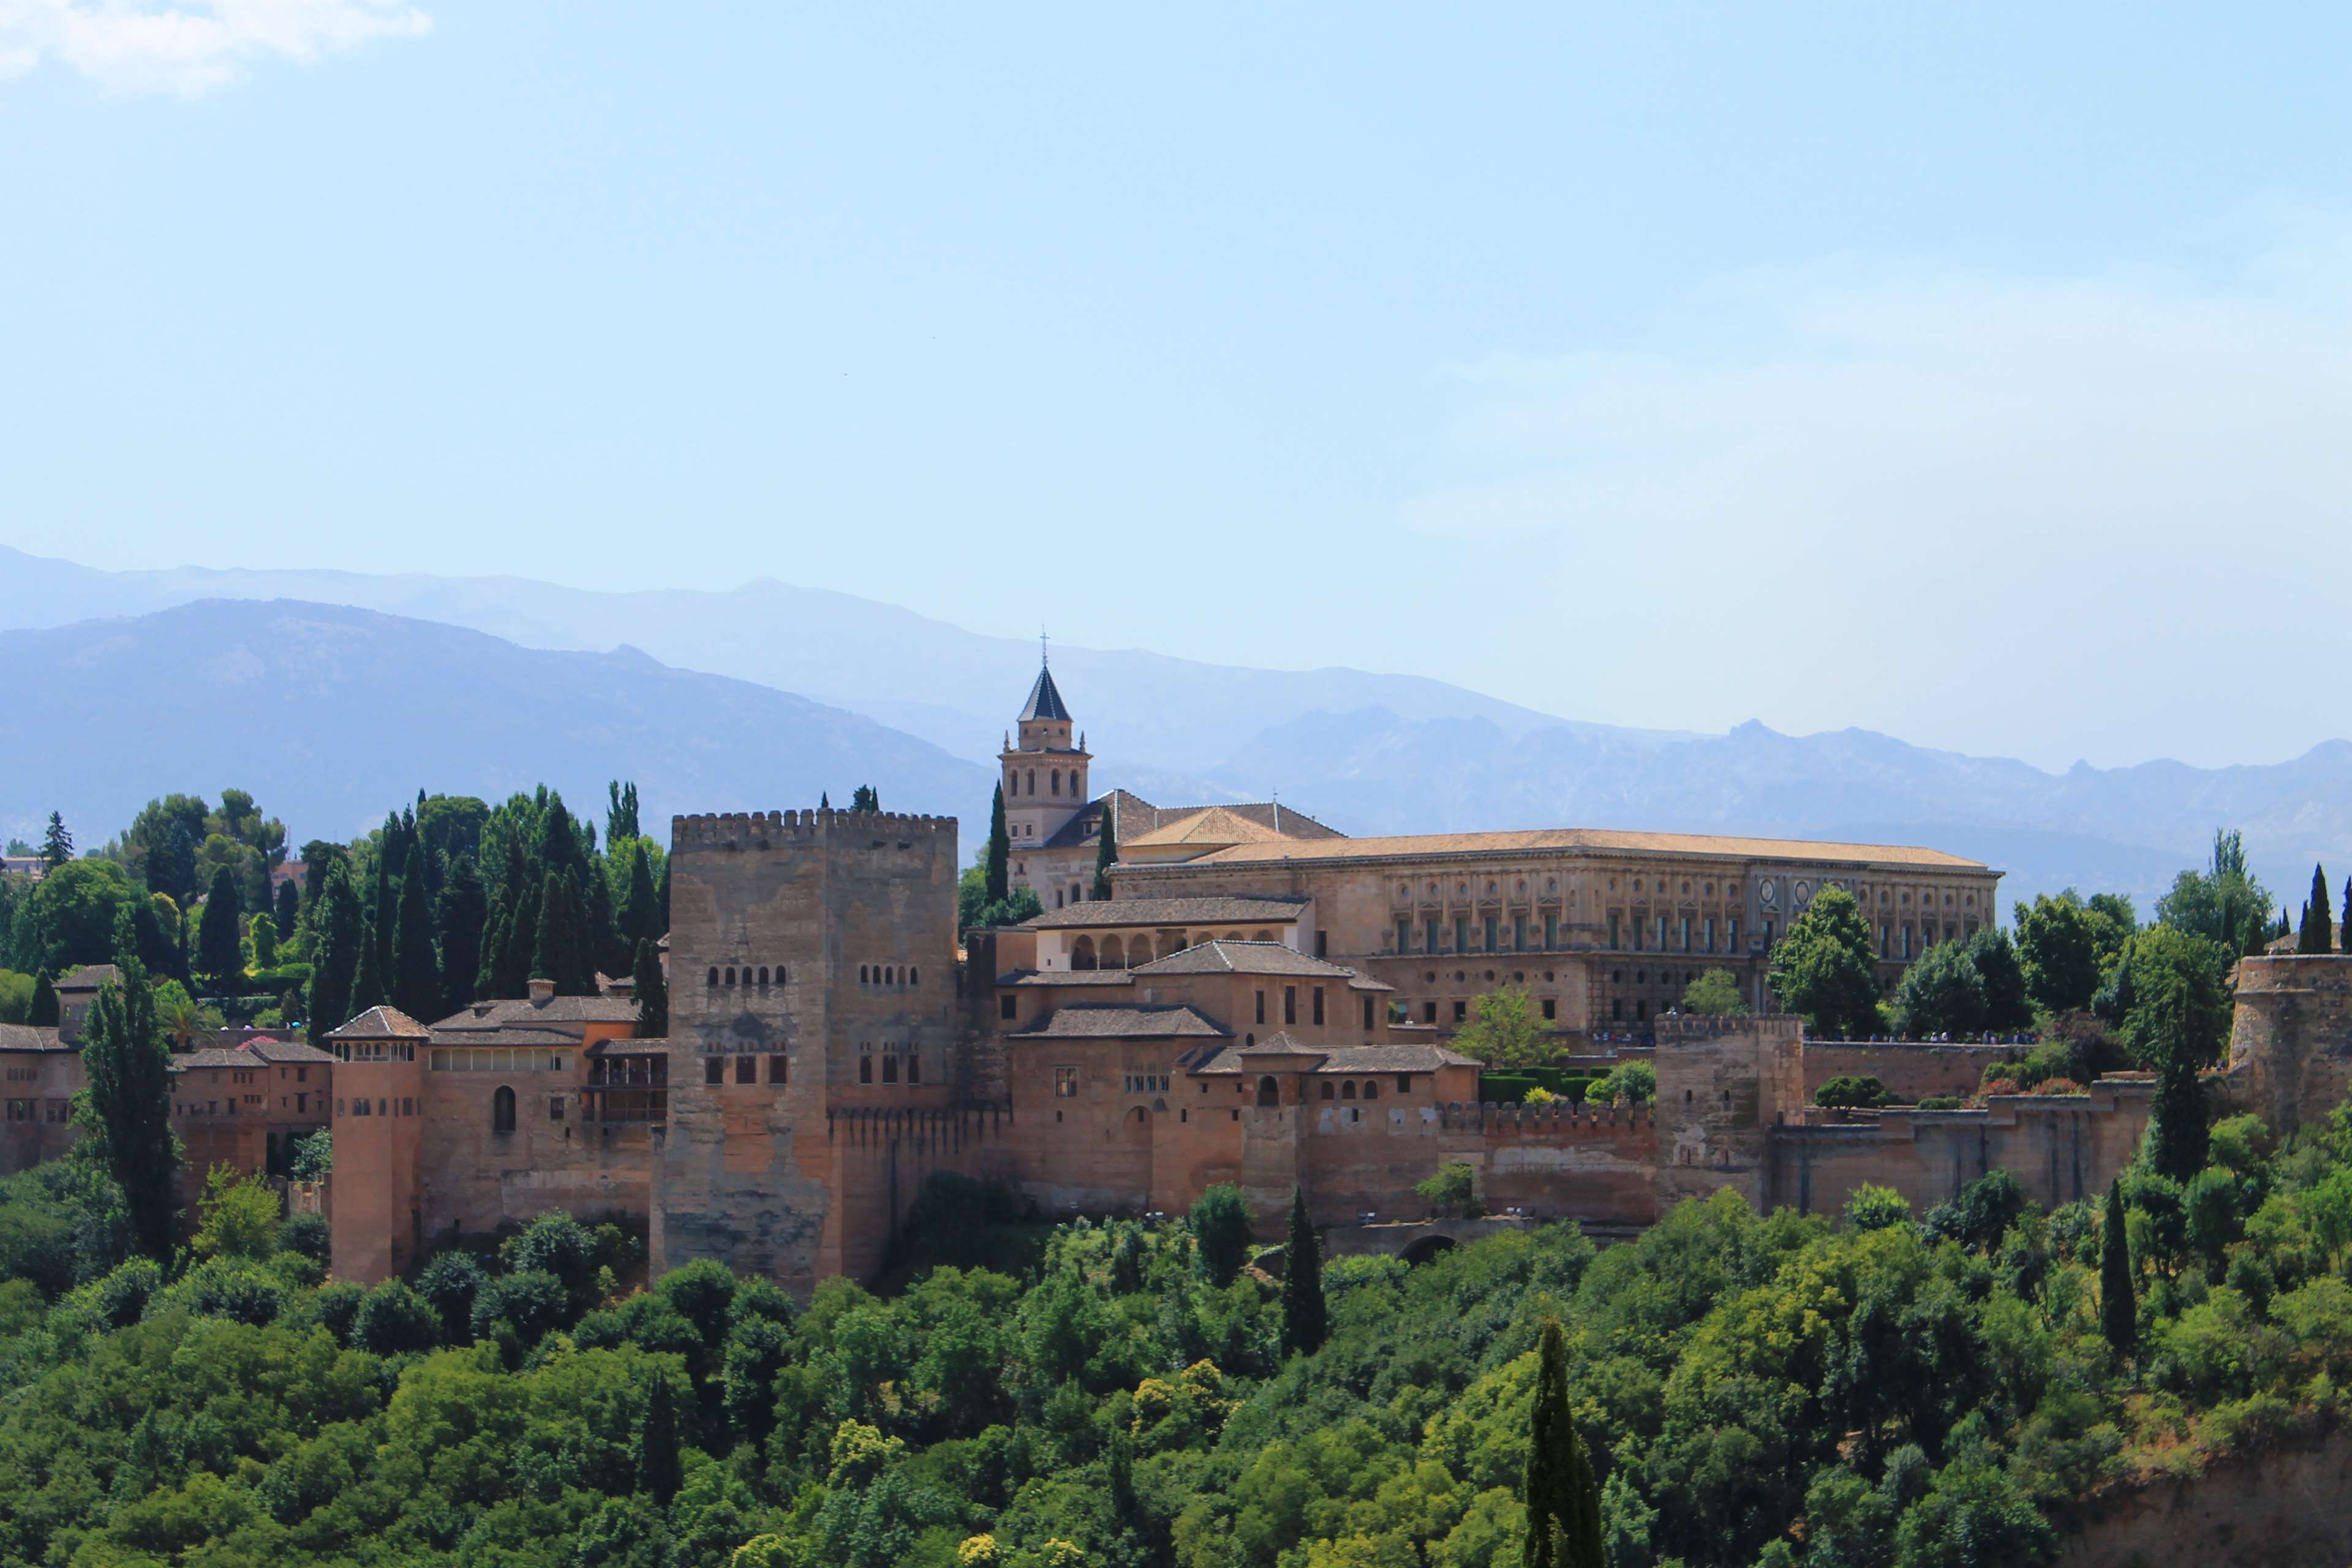 alhambra, castle, granada, landscape, mountains, nature, spain